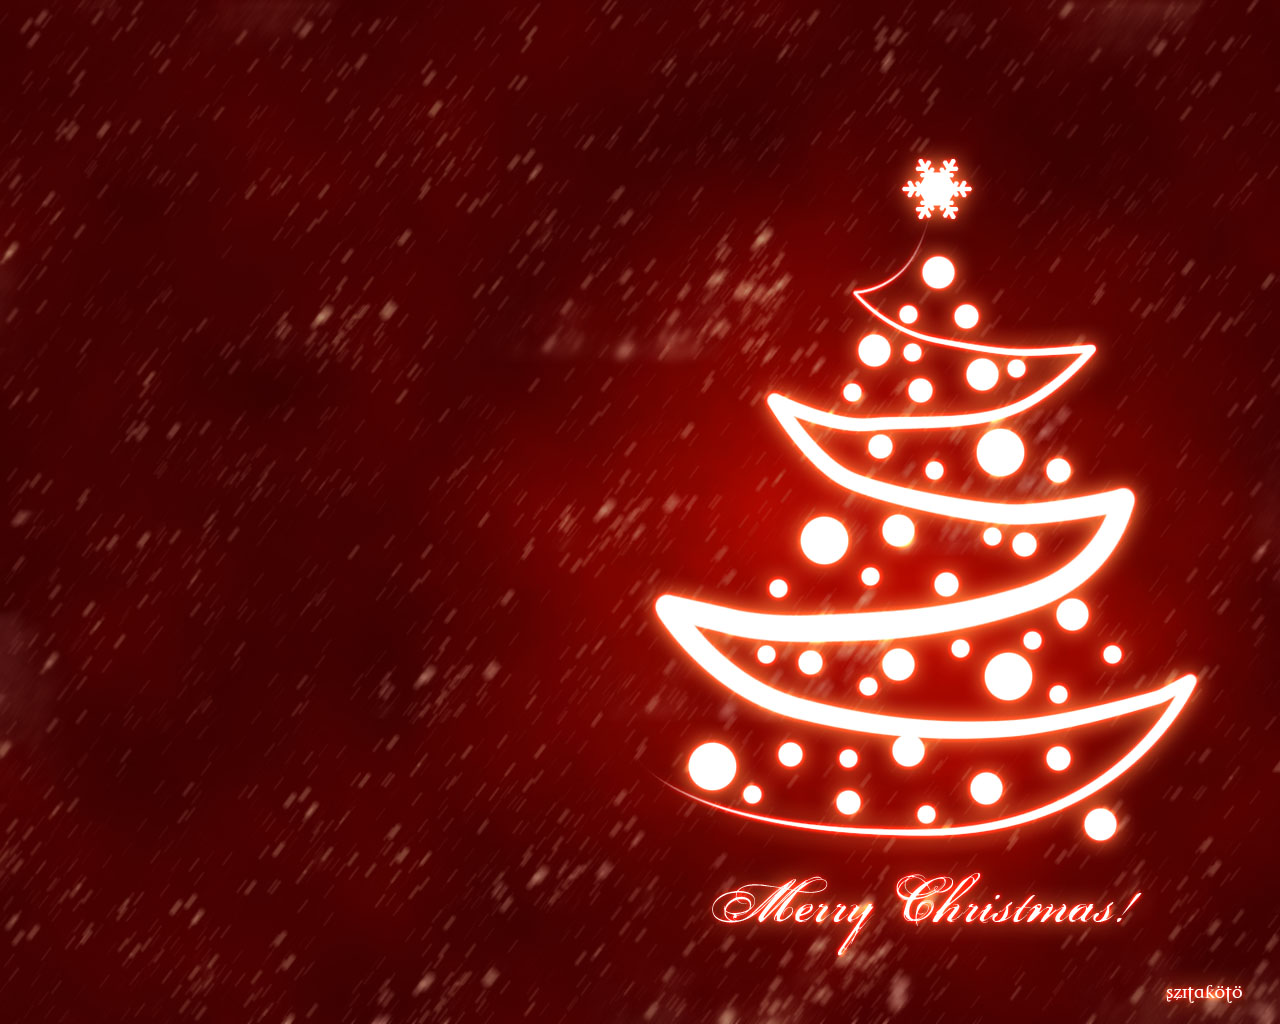 http://3.bp.blogspot.com/-_0GX7_3o_4U/TvRy7mtgVnI/AAAAAAAAByo/RjazMjYg6oY/s1600/Merry_Christmas_by_szitakoto.jpg